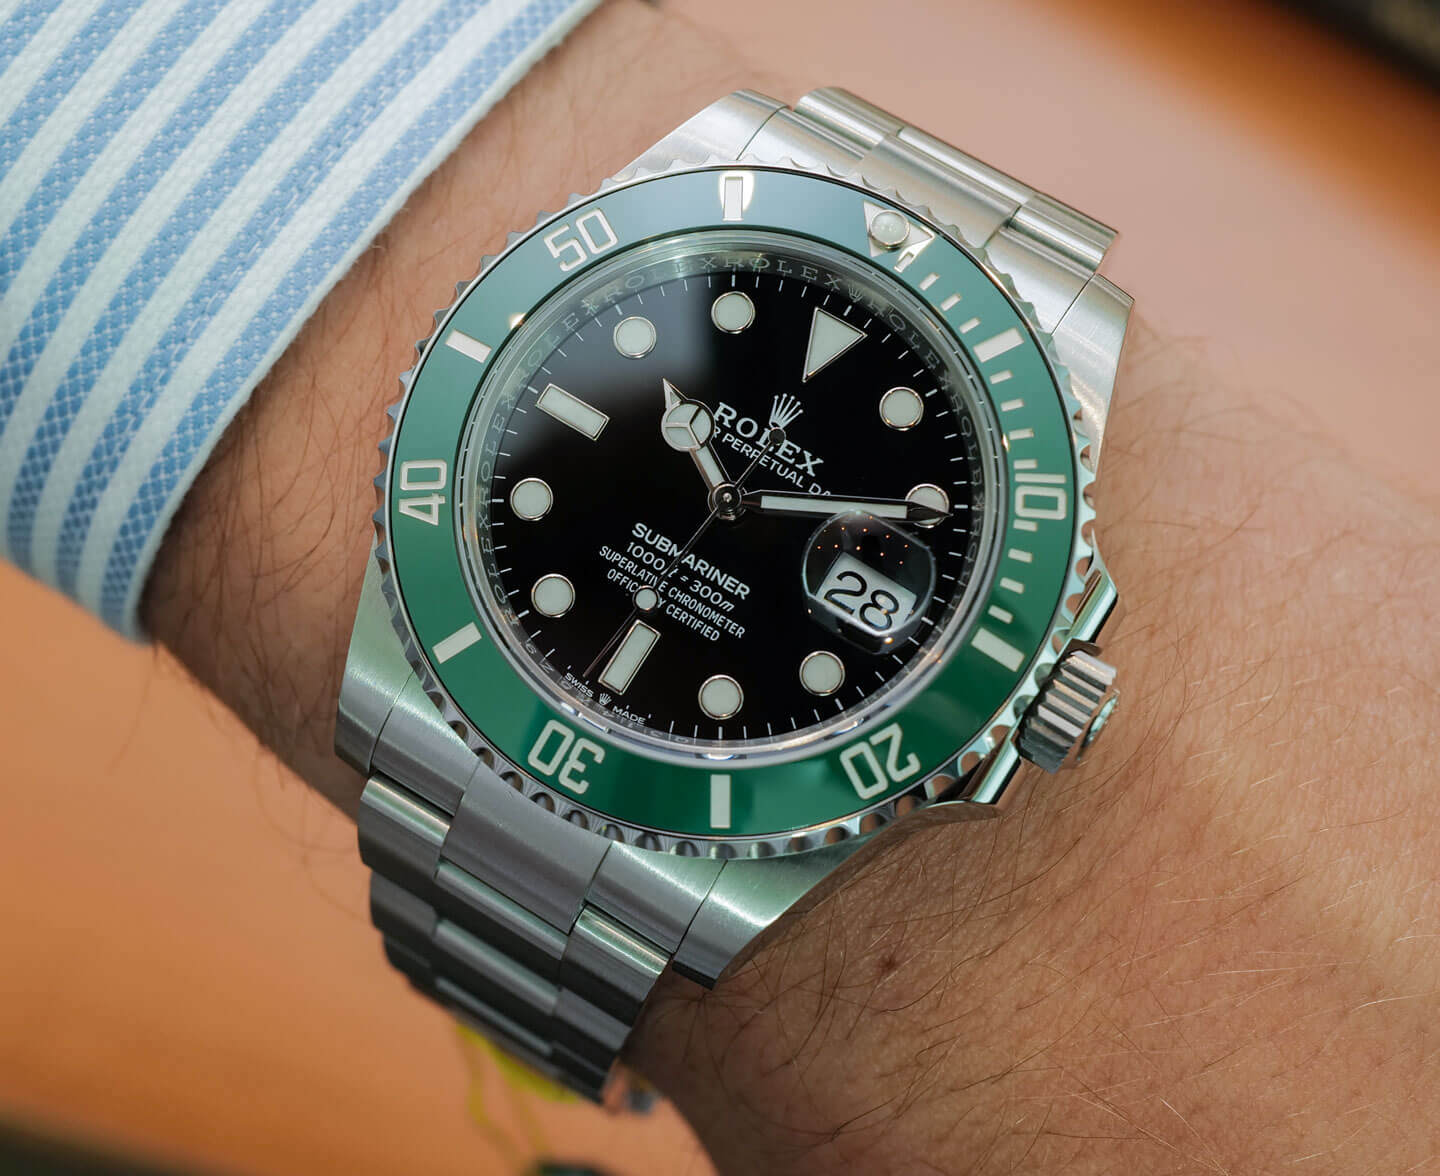 Opmærksom Ti gen Rolex Submariner 126610LV Watch With Green Ceramic Bezel Debut |  aBlogtoWatch